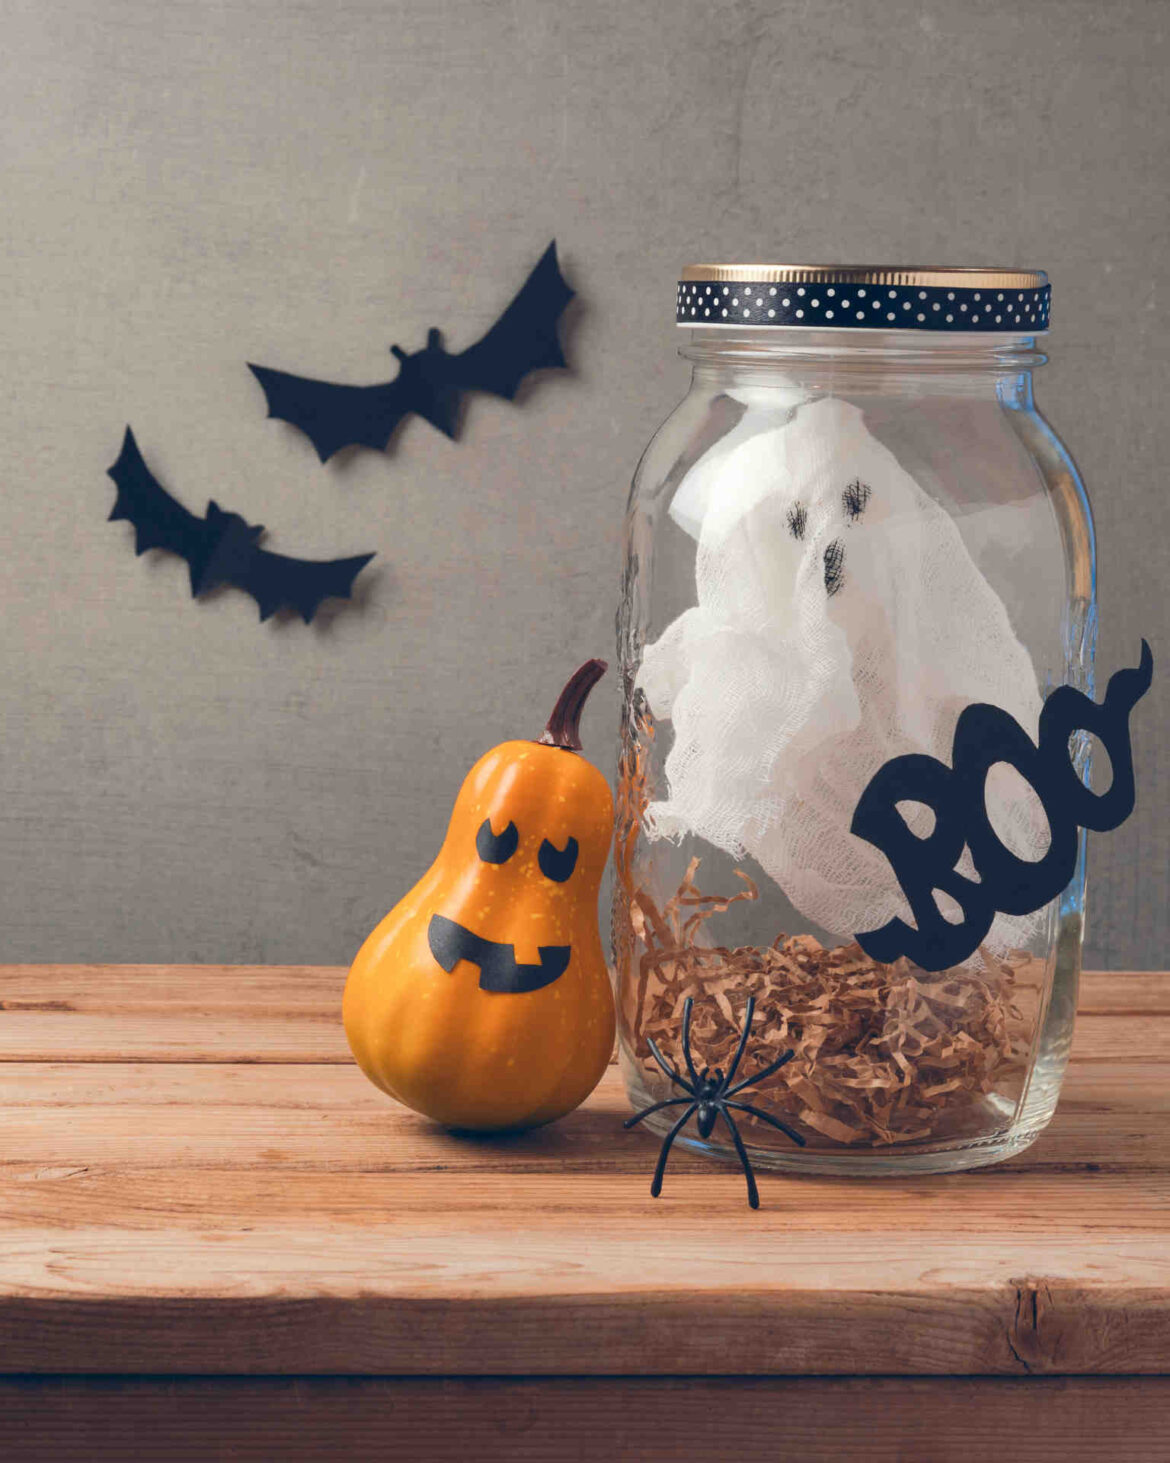 Τι ακριβώς γιορτάζουν οι Αμερικανοί στο Halloween στις 31 Οκτωβρίου;